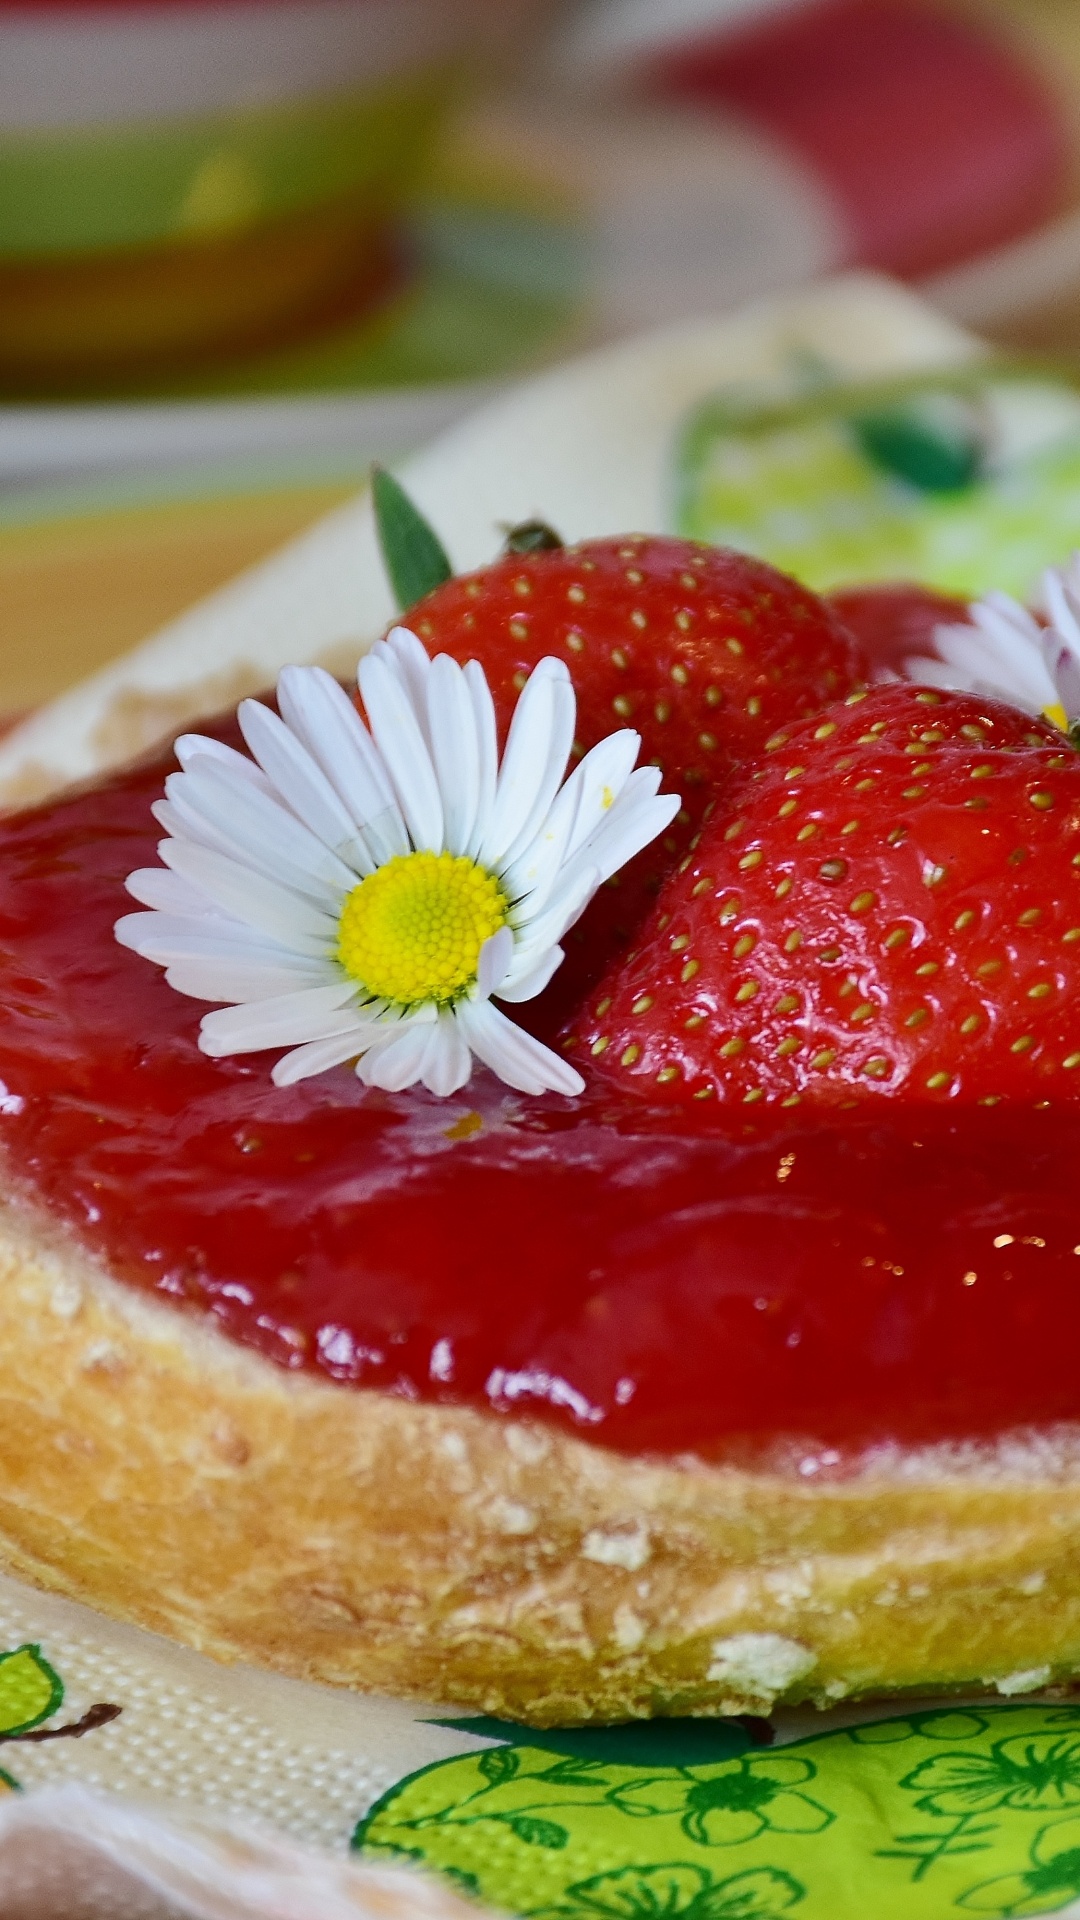 甜点, 食品, 成分, 甜头, 草莓 壁纸 1080x1920 允许